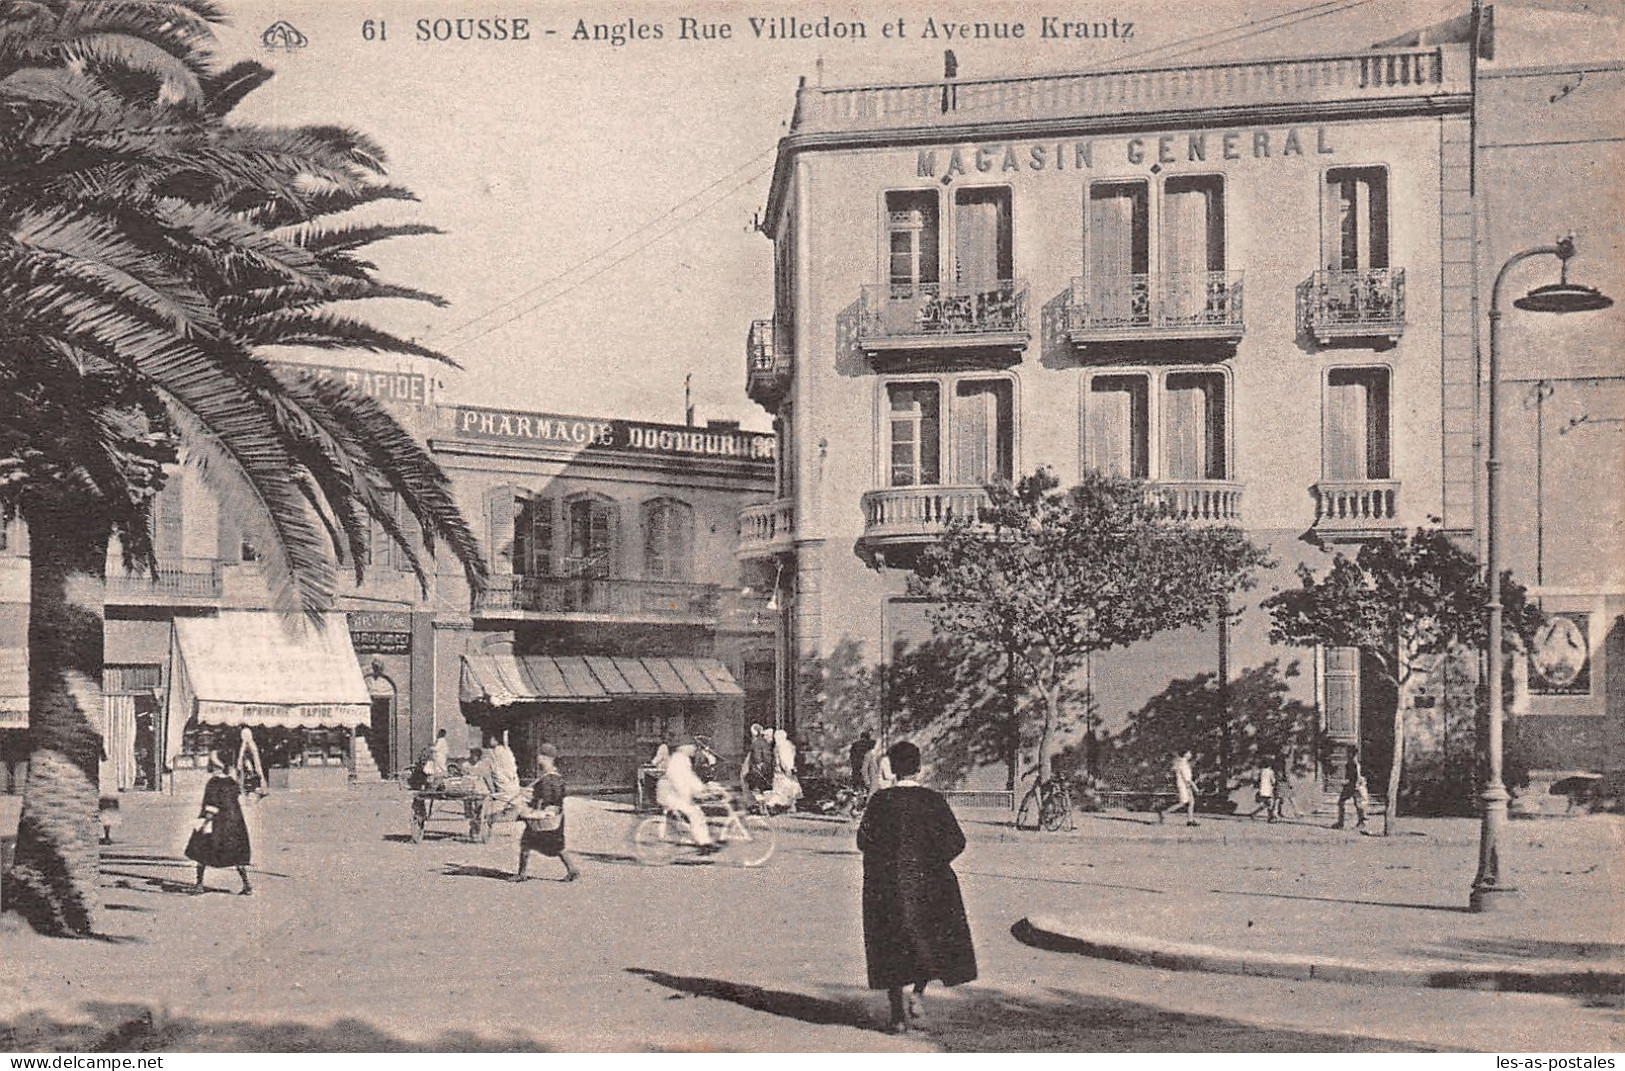 TUNISIE SOUSSE RUE VILLEBON - Tunisie